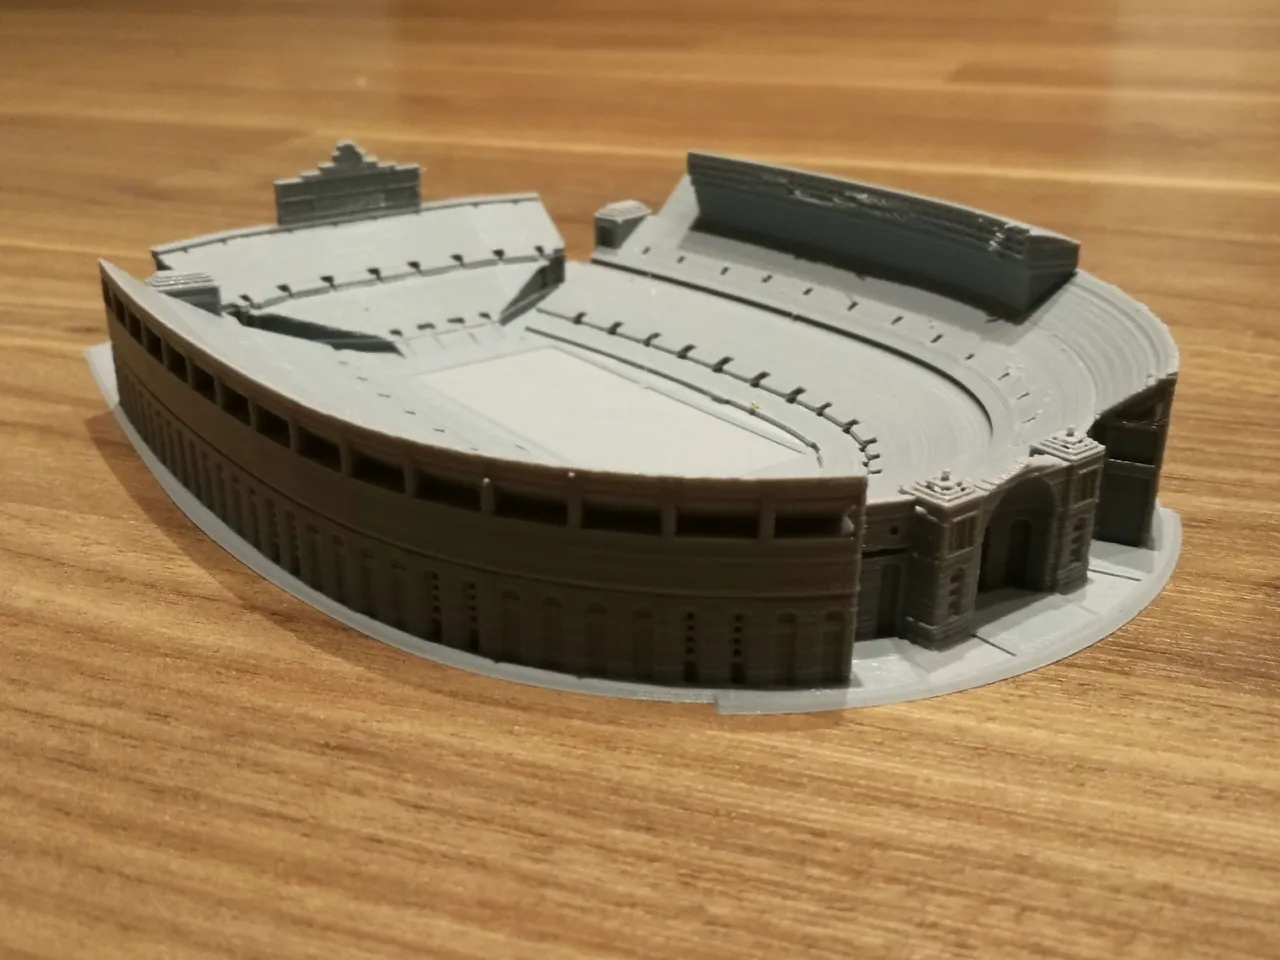 TQL Stadium Modèle 3D